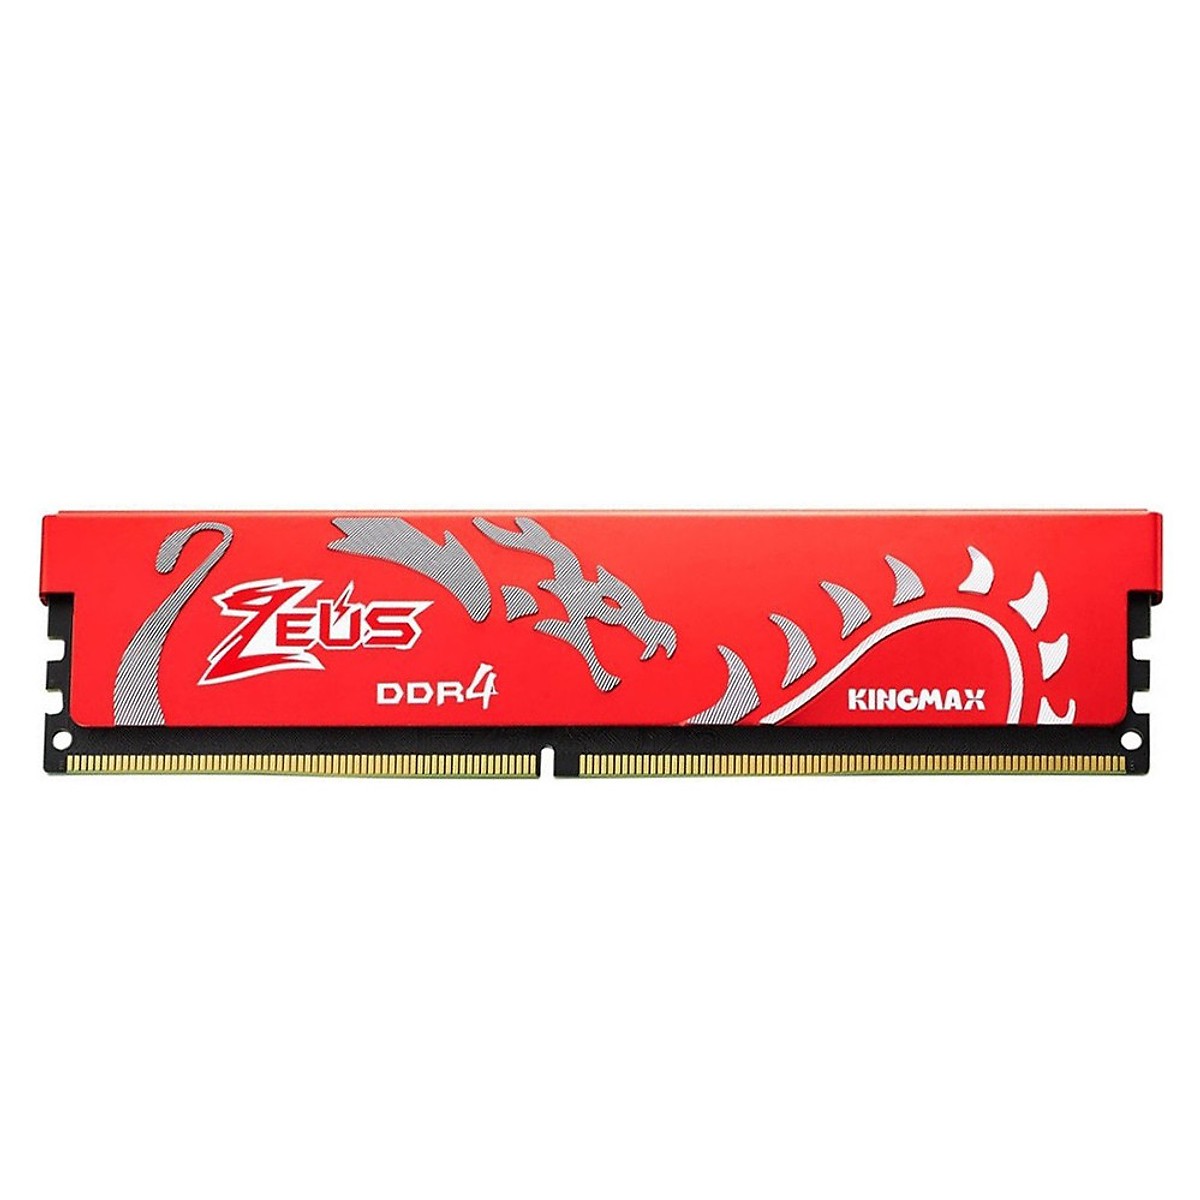 Bộ nhớ DDR4 Kingmax 4GB (2666) ZEUS Dragon Heatsink (Đỏ) - Hàng chính hãng